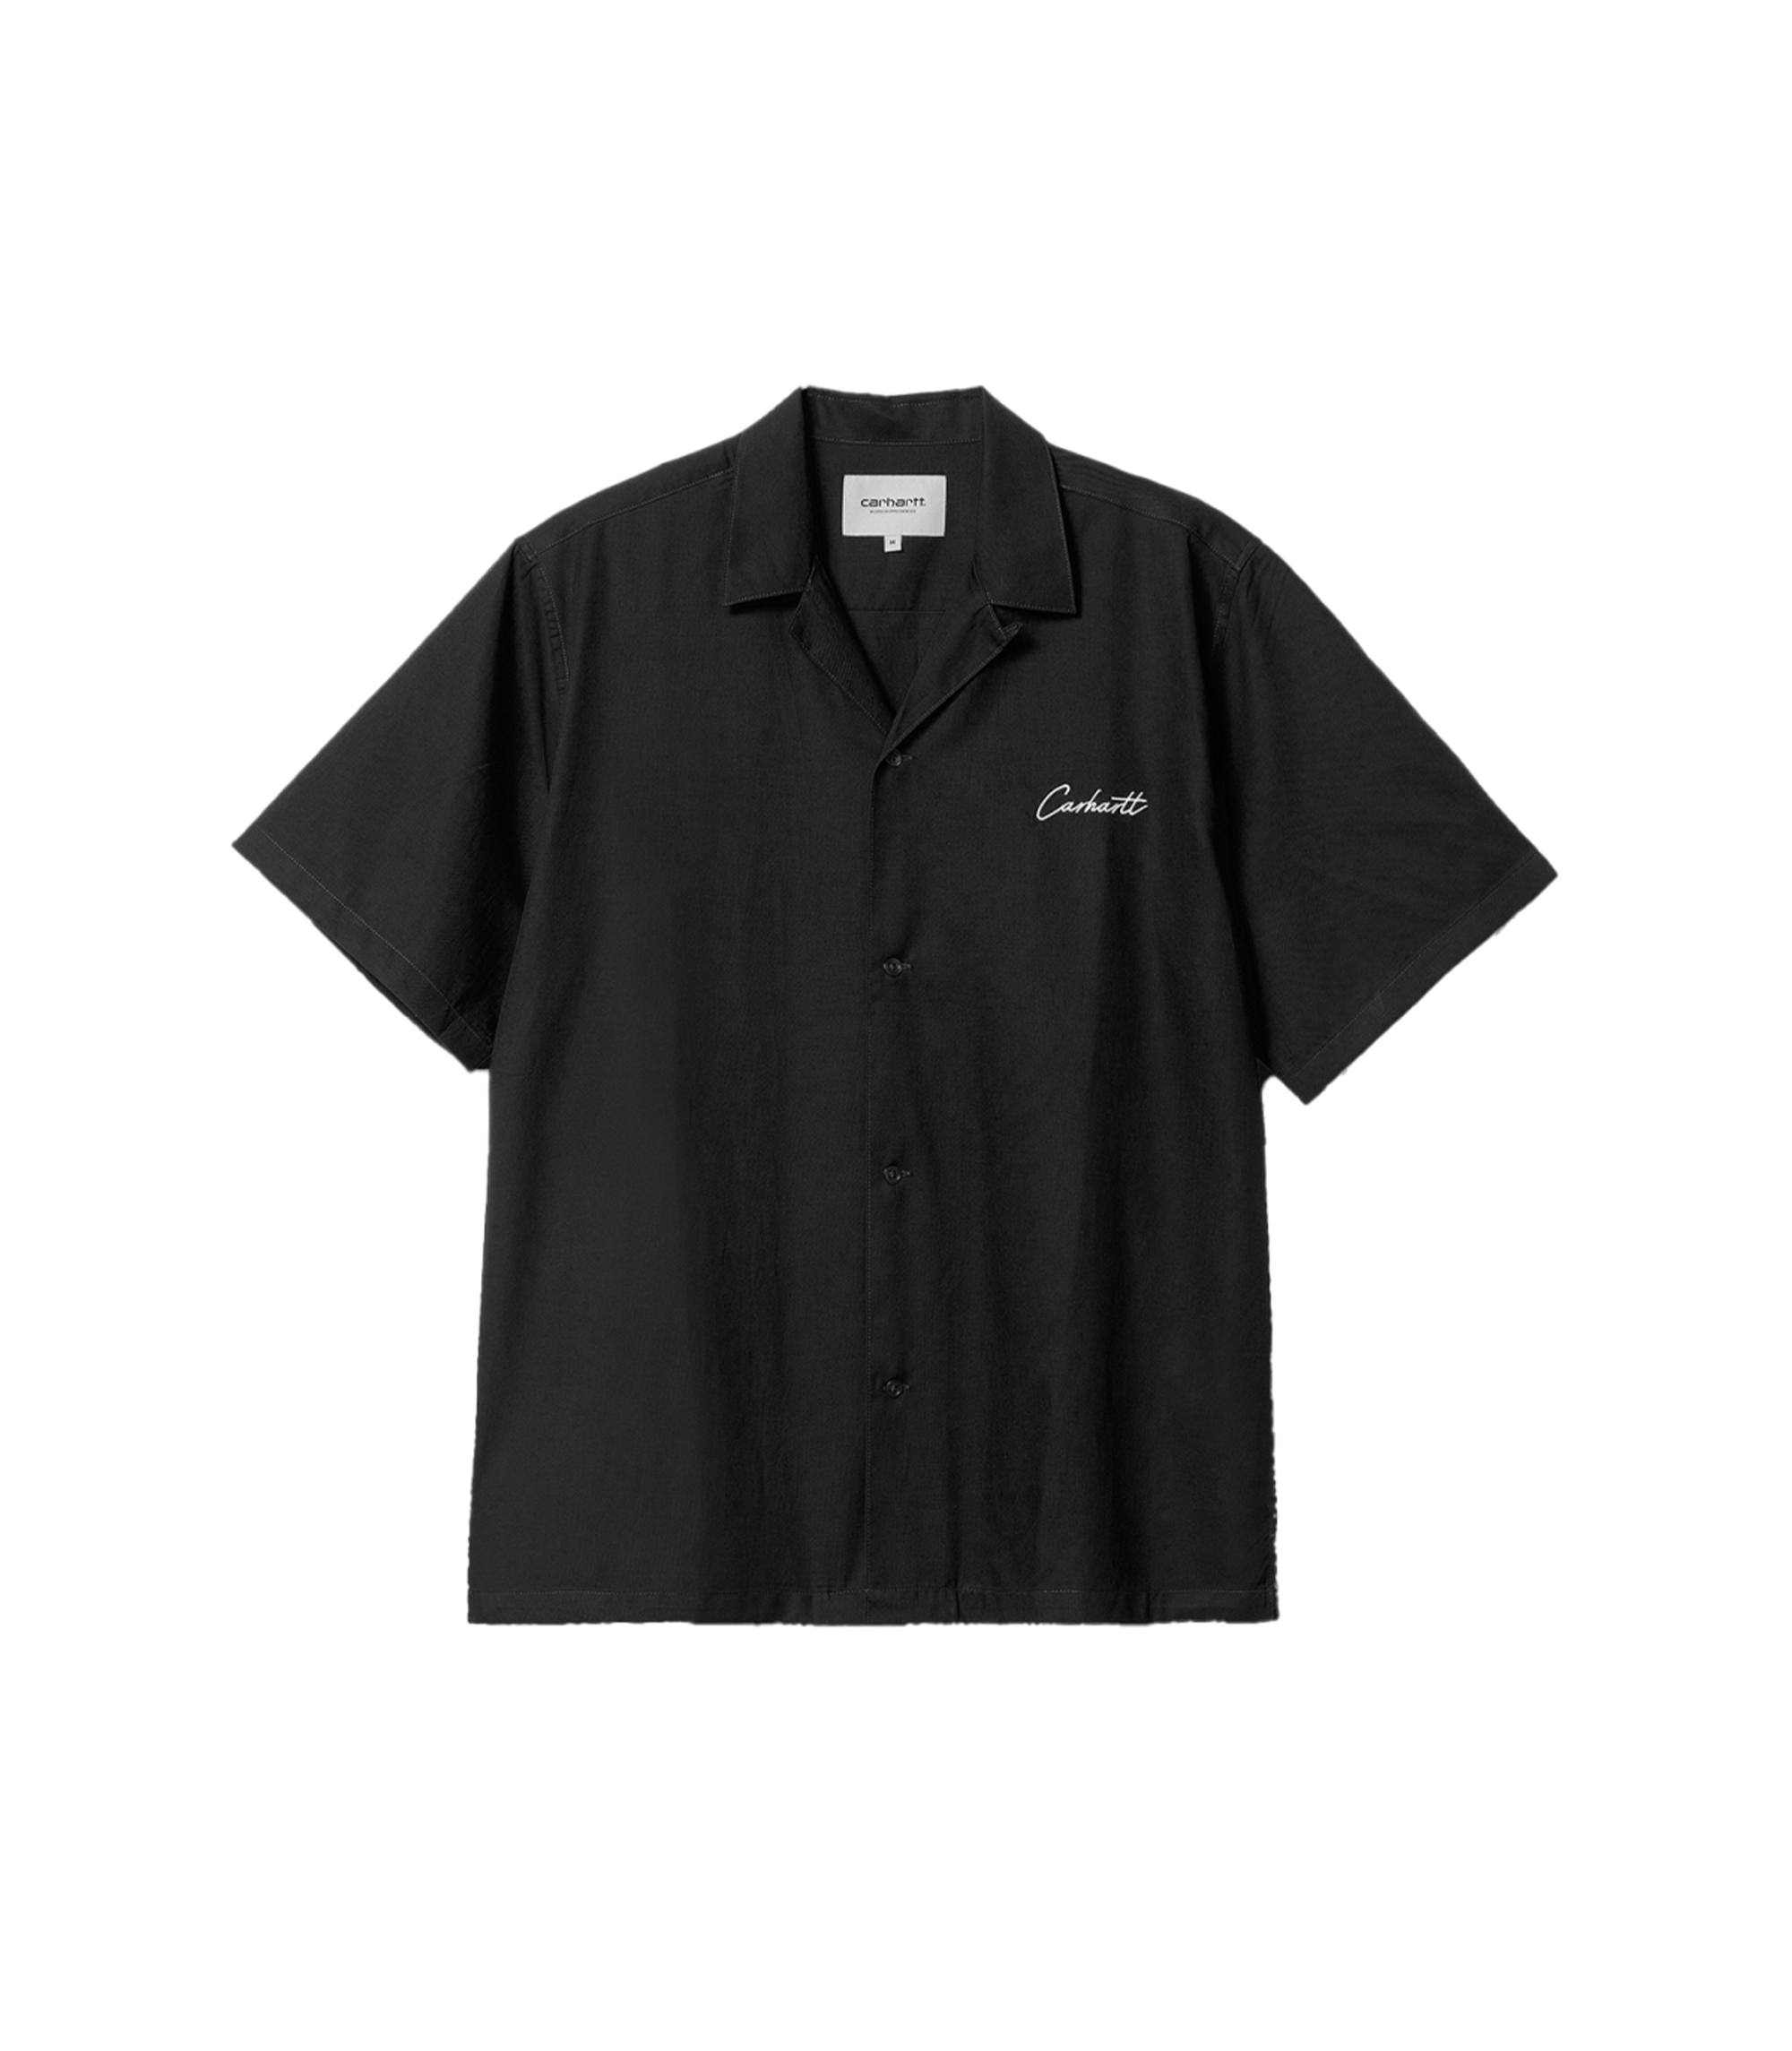 S/S Delray Shirt - Black / Wax